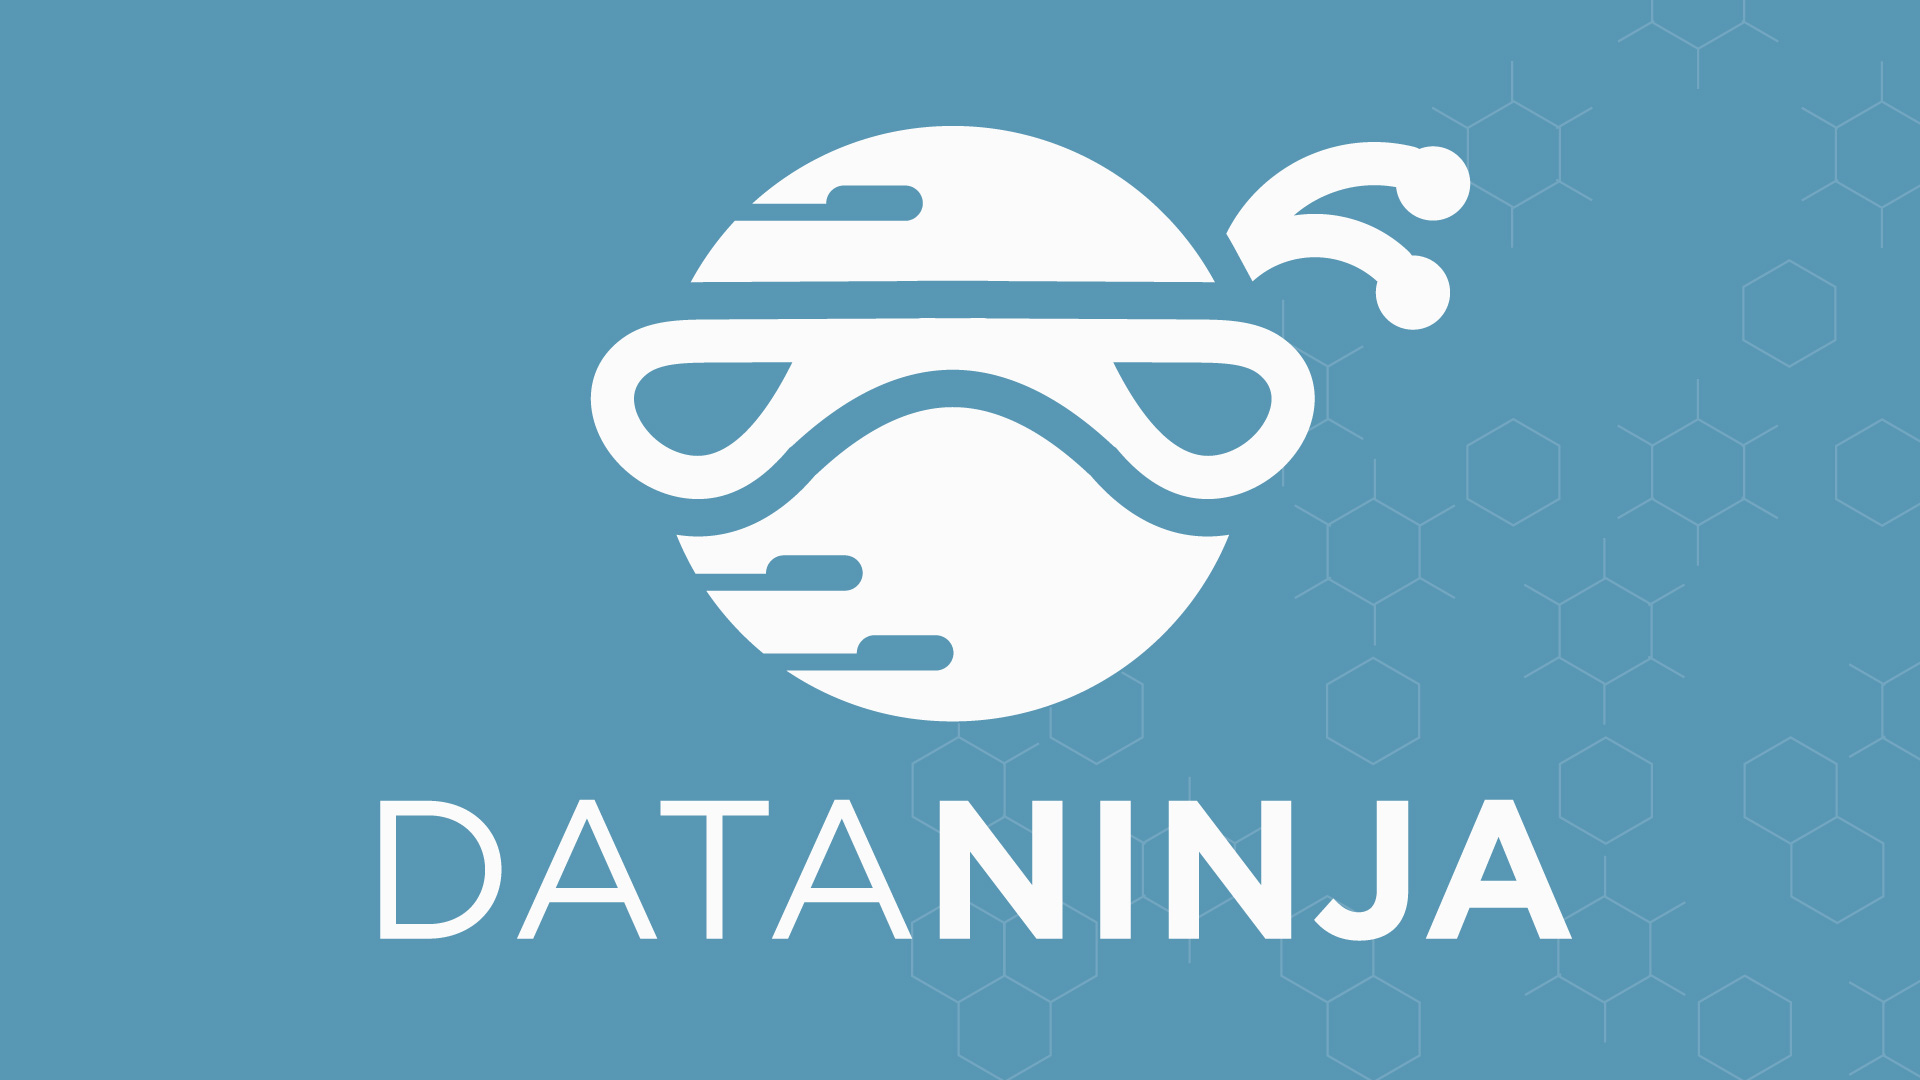 Data ninja logo 